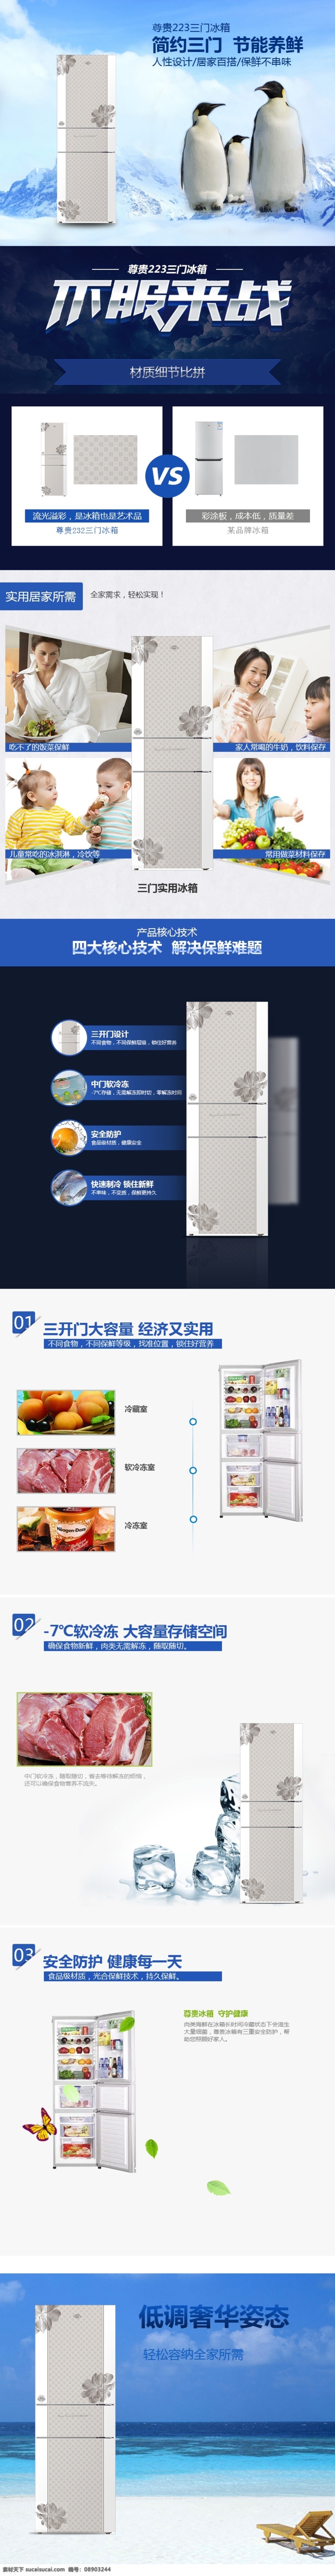 冰箱详情页 电商 产品 详情 页 电器